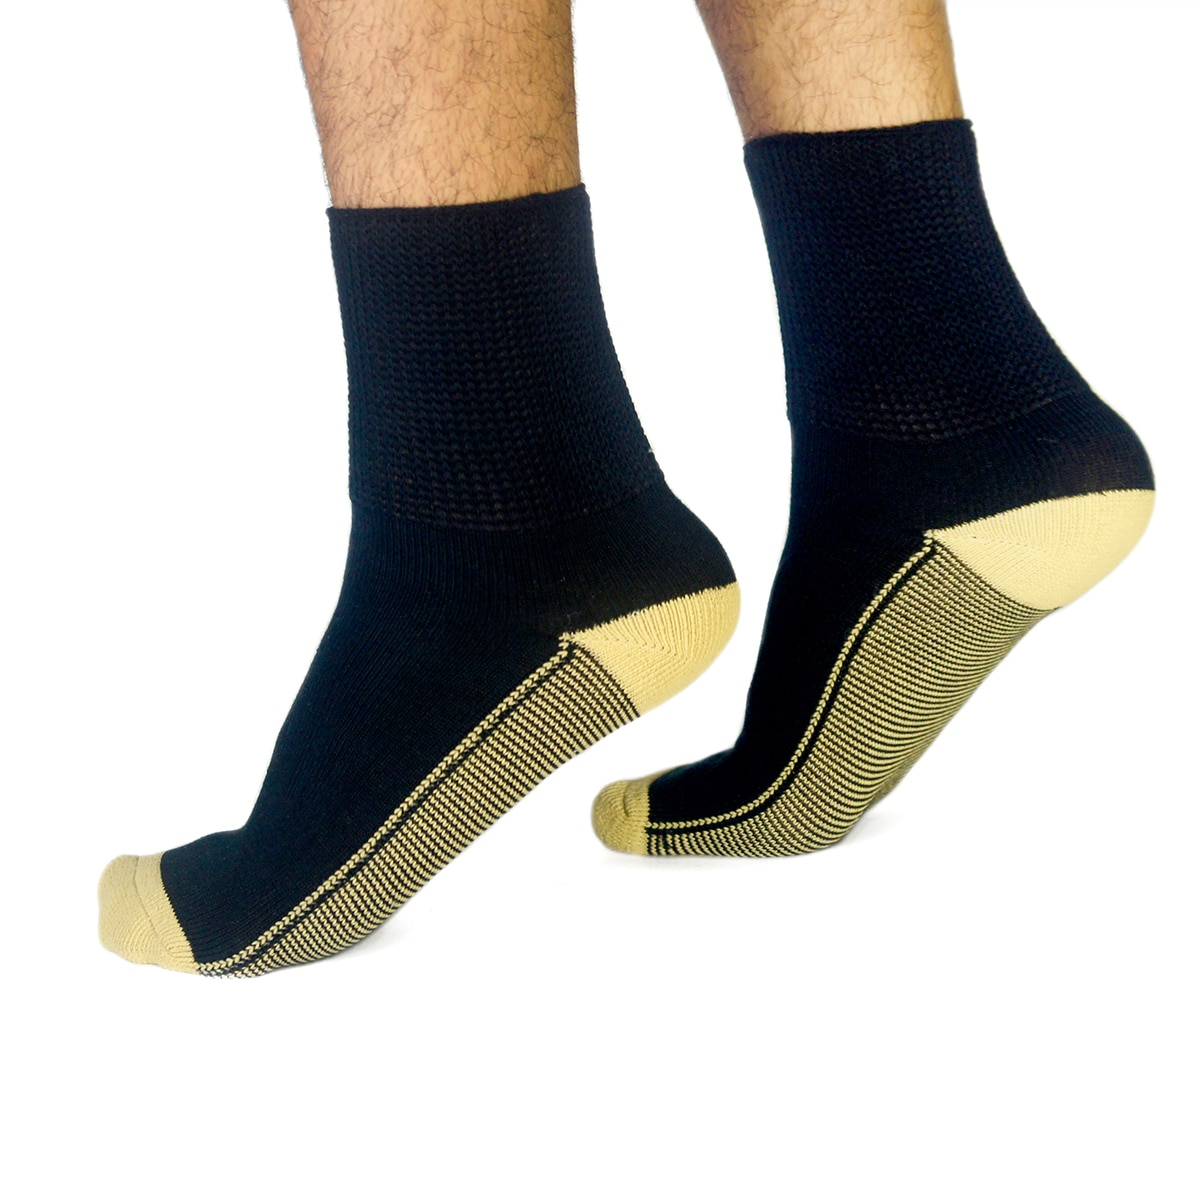 Copper Socks, Calcetines Cortos para Diabéticos (3 Pares) Color Negro Talla Grande